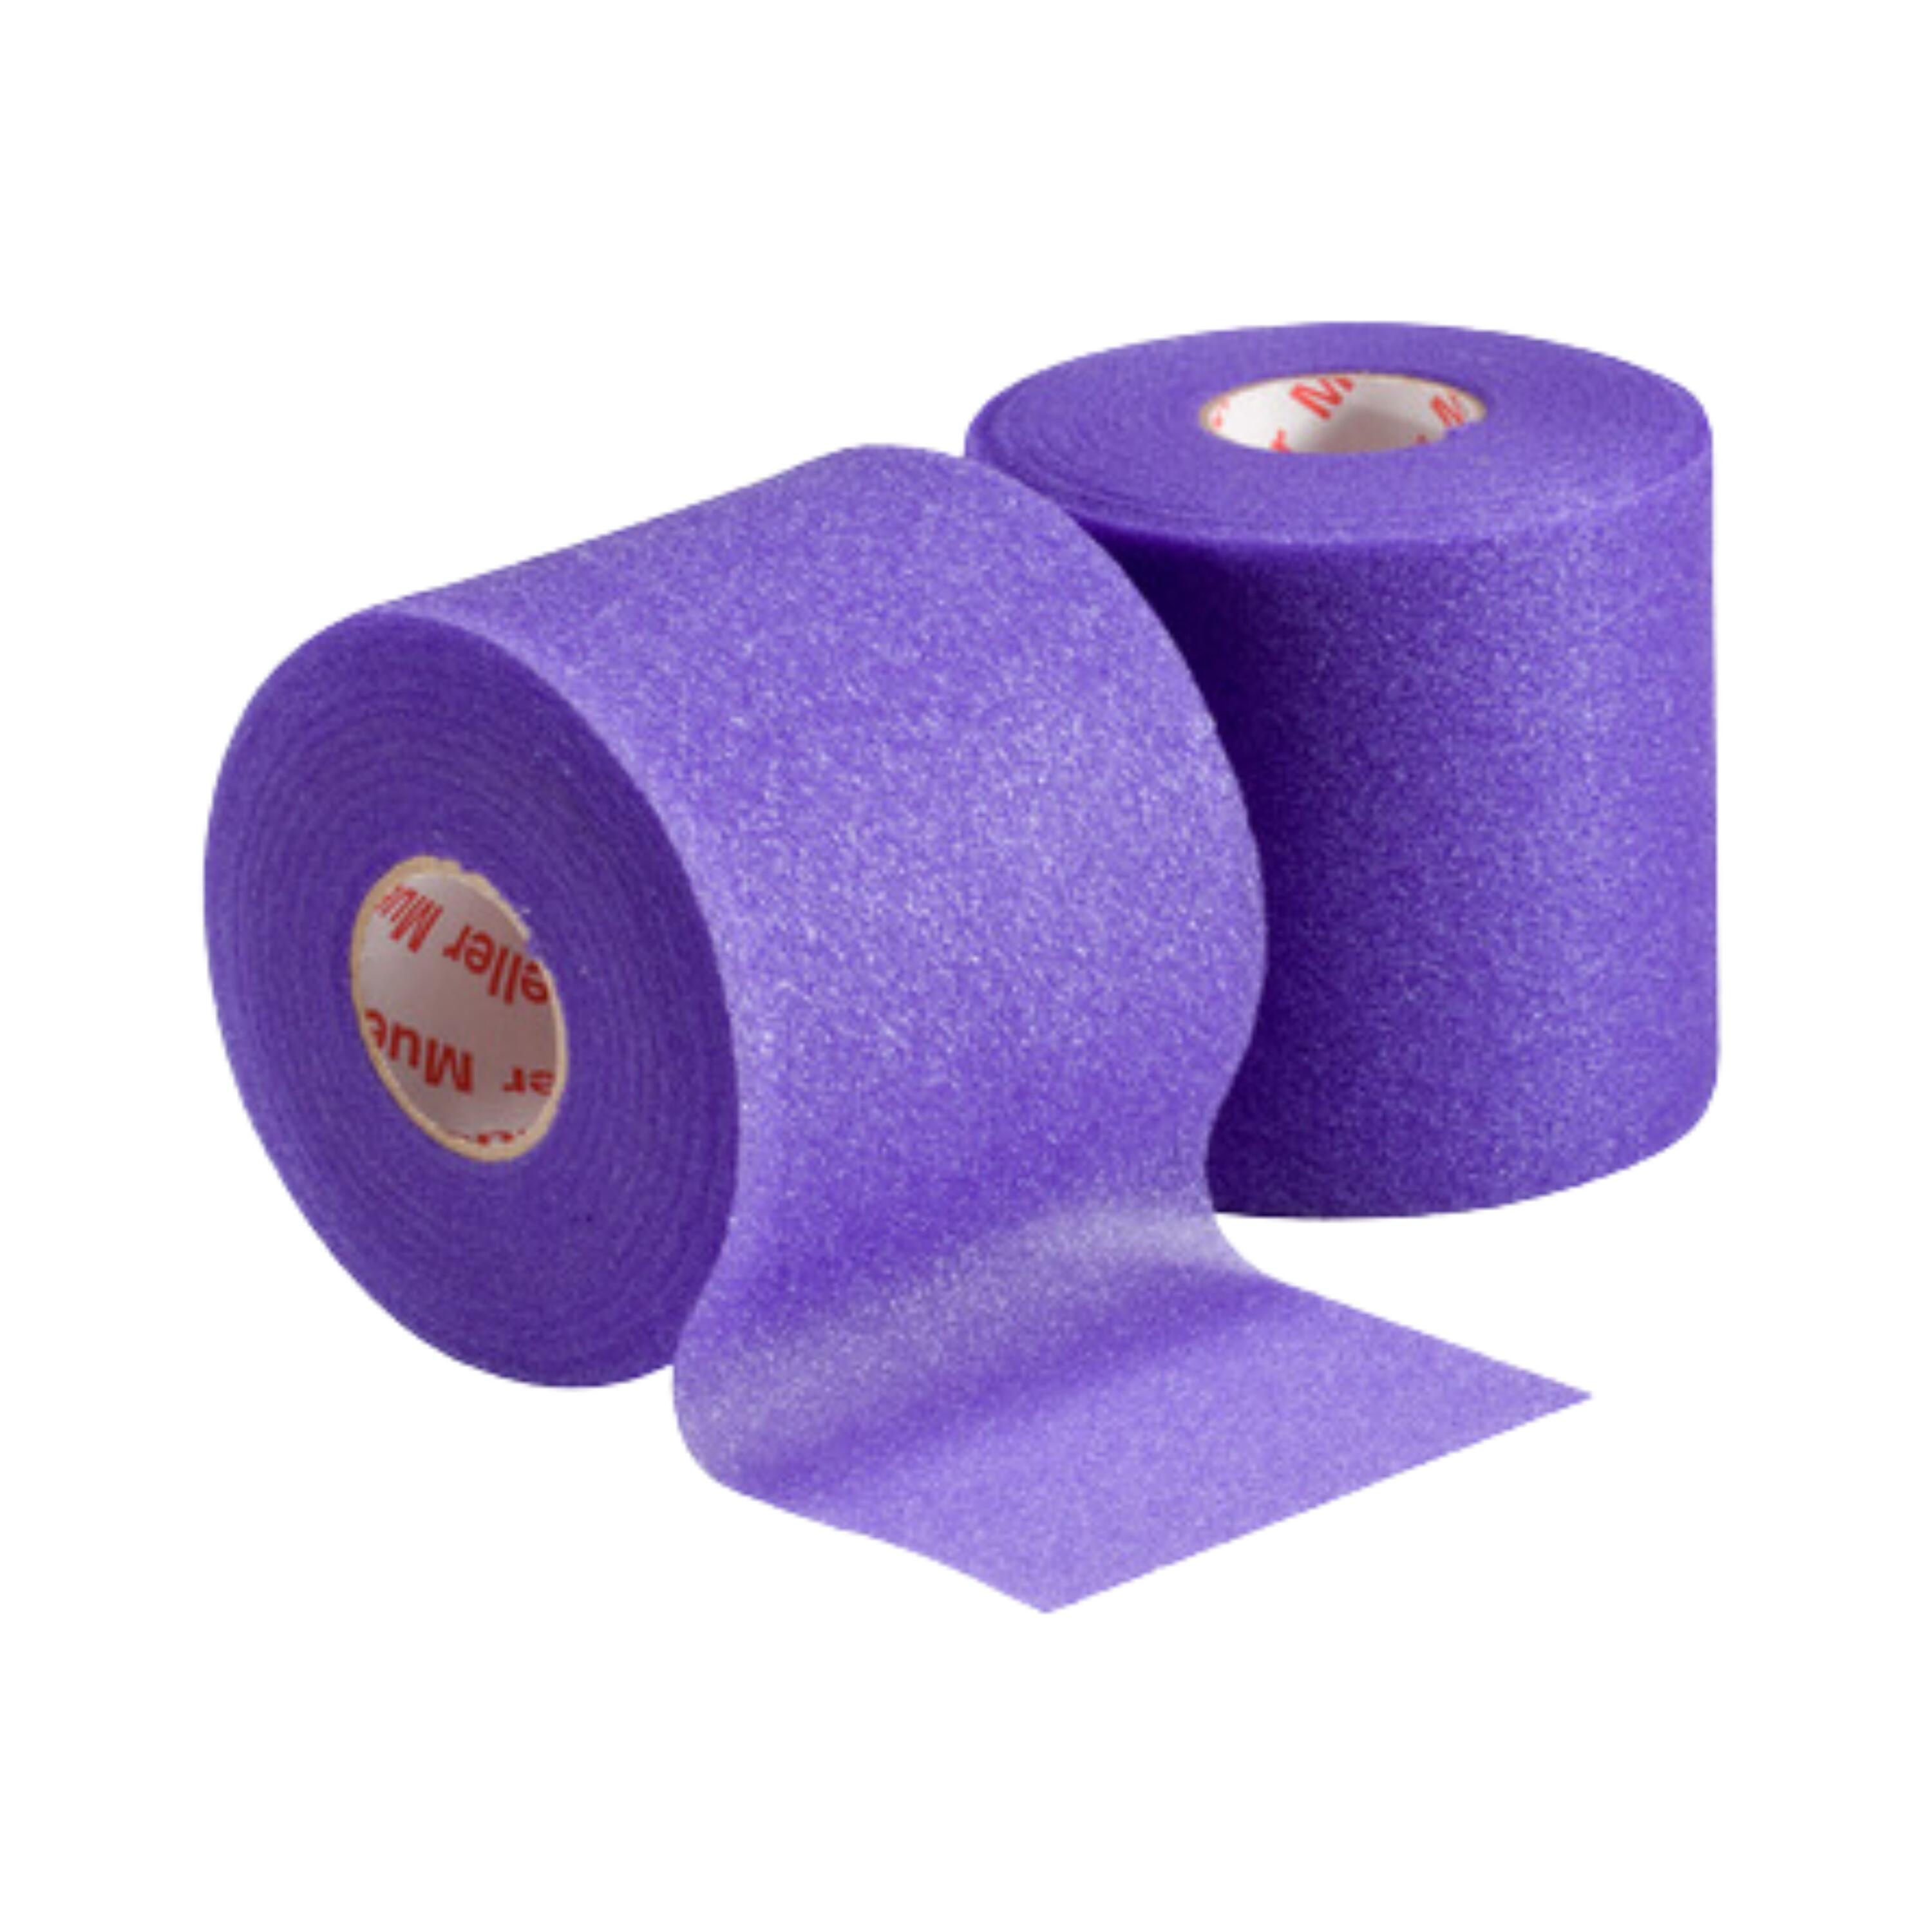 MUELLER Mueller Sports M Wrap Pre-Tape Underwrap Foam (Pack of 4) - Purple